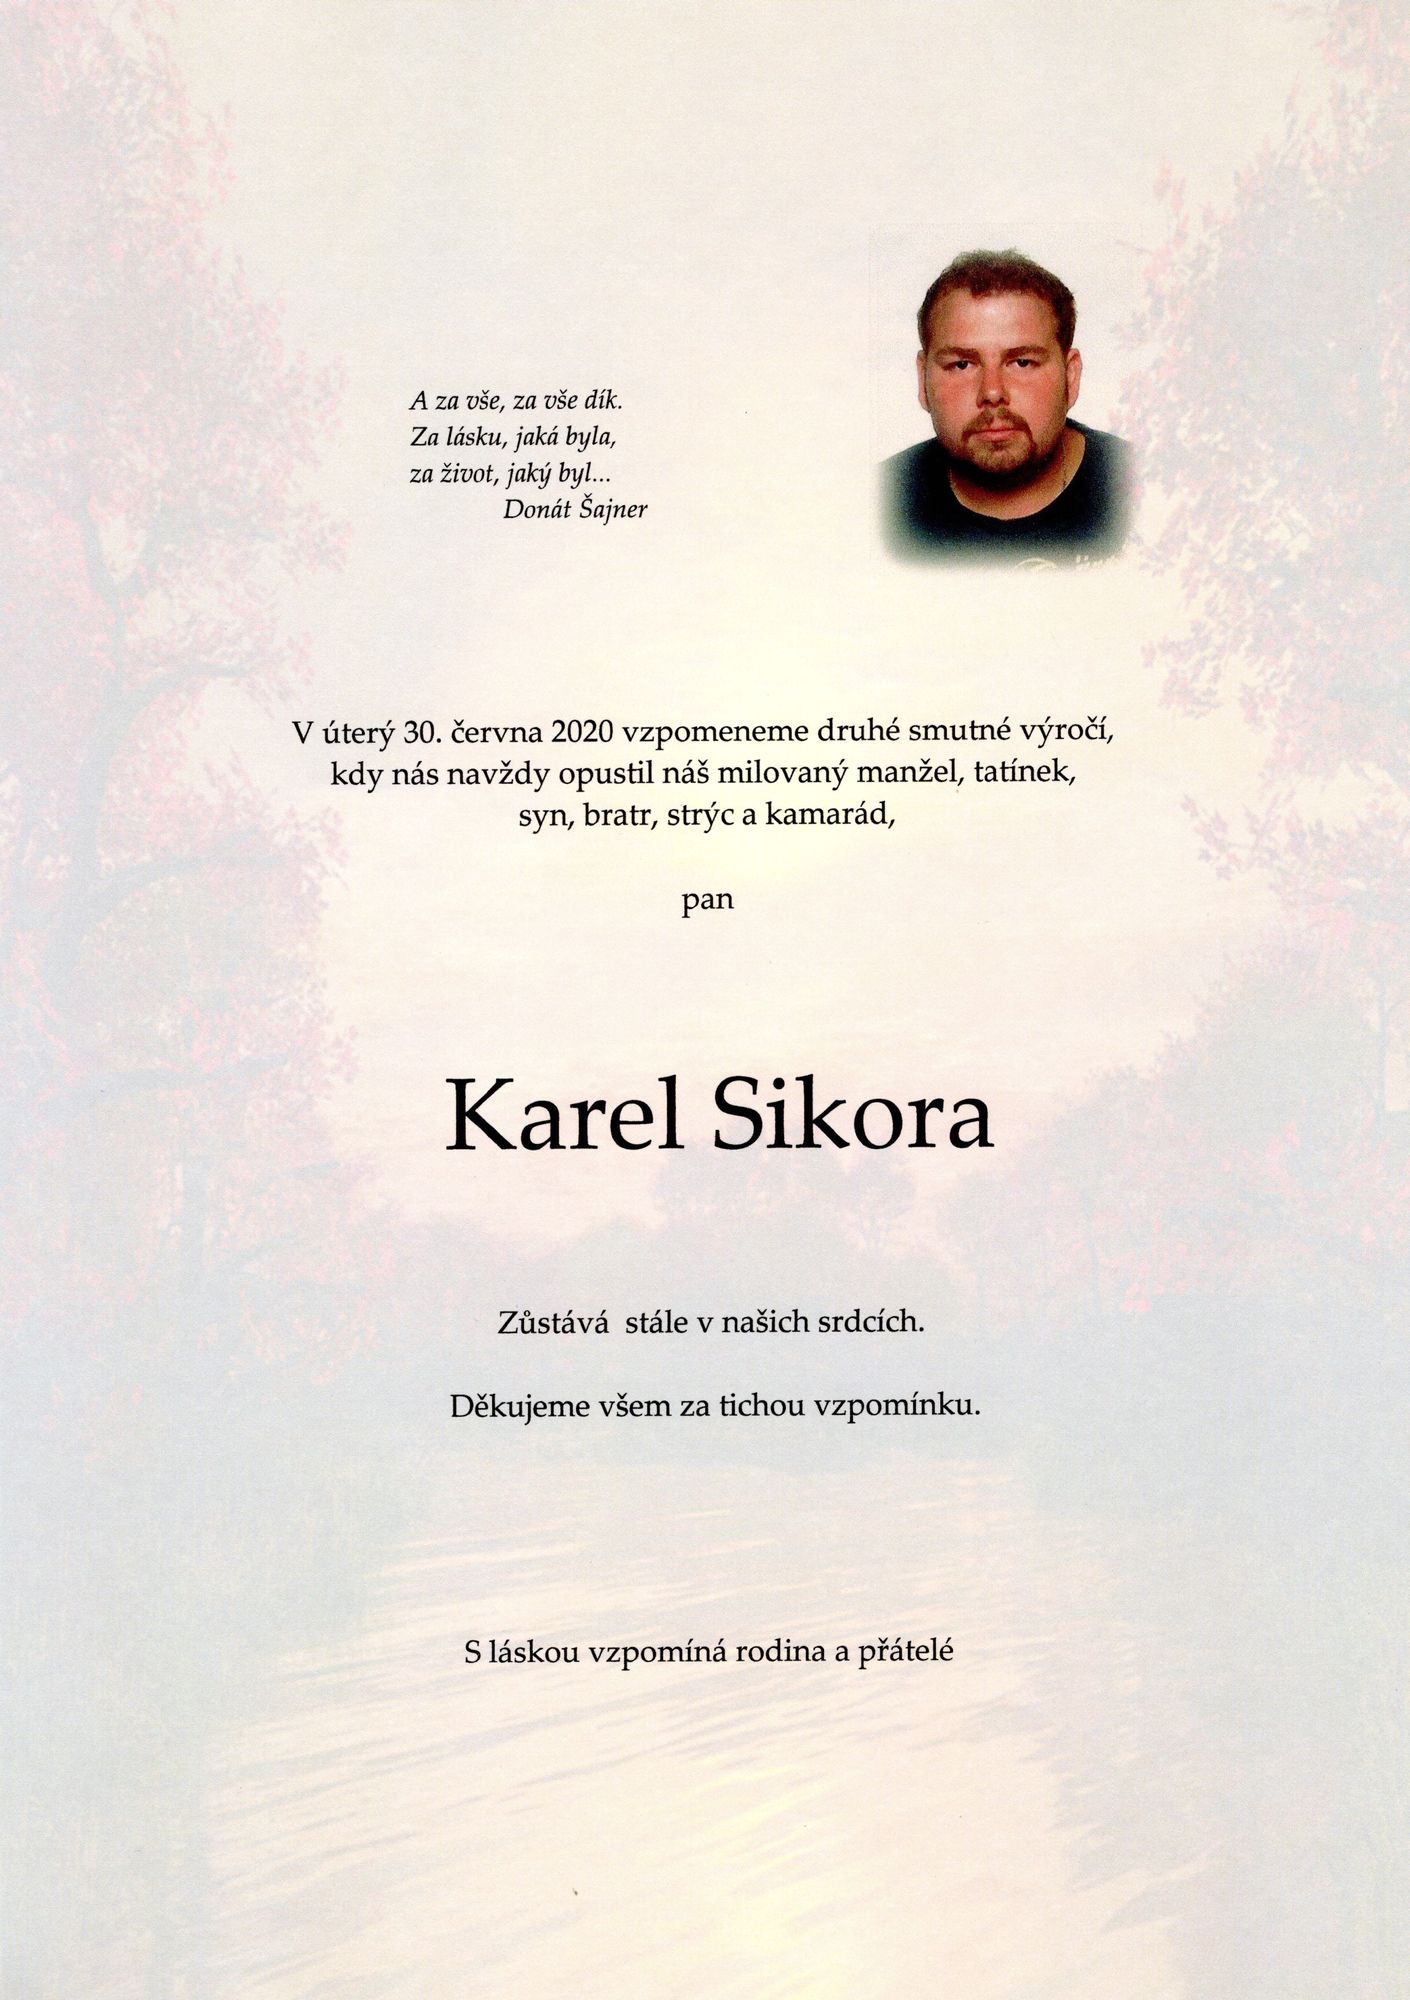 Karel Sikora